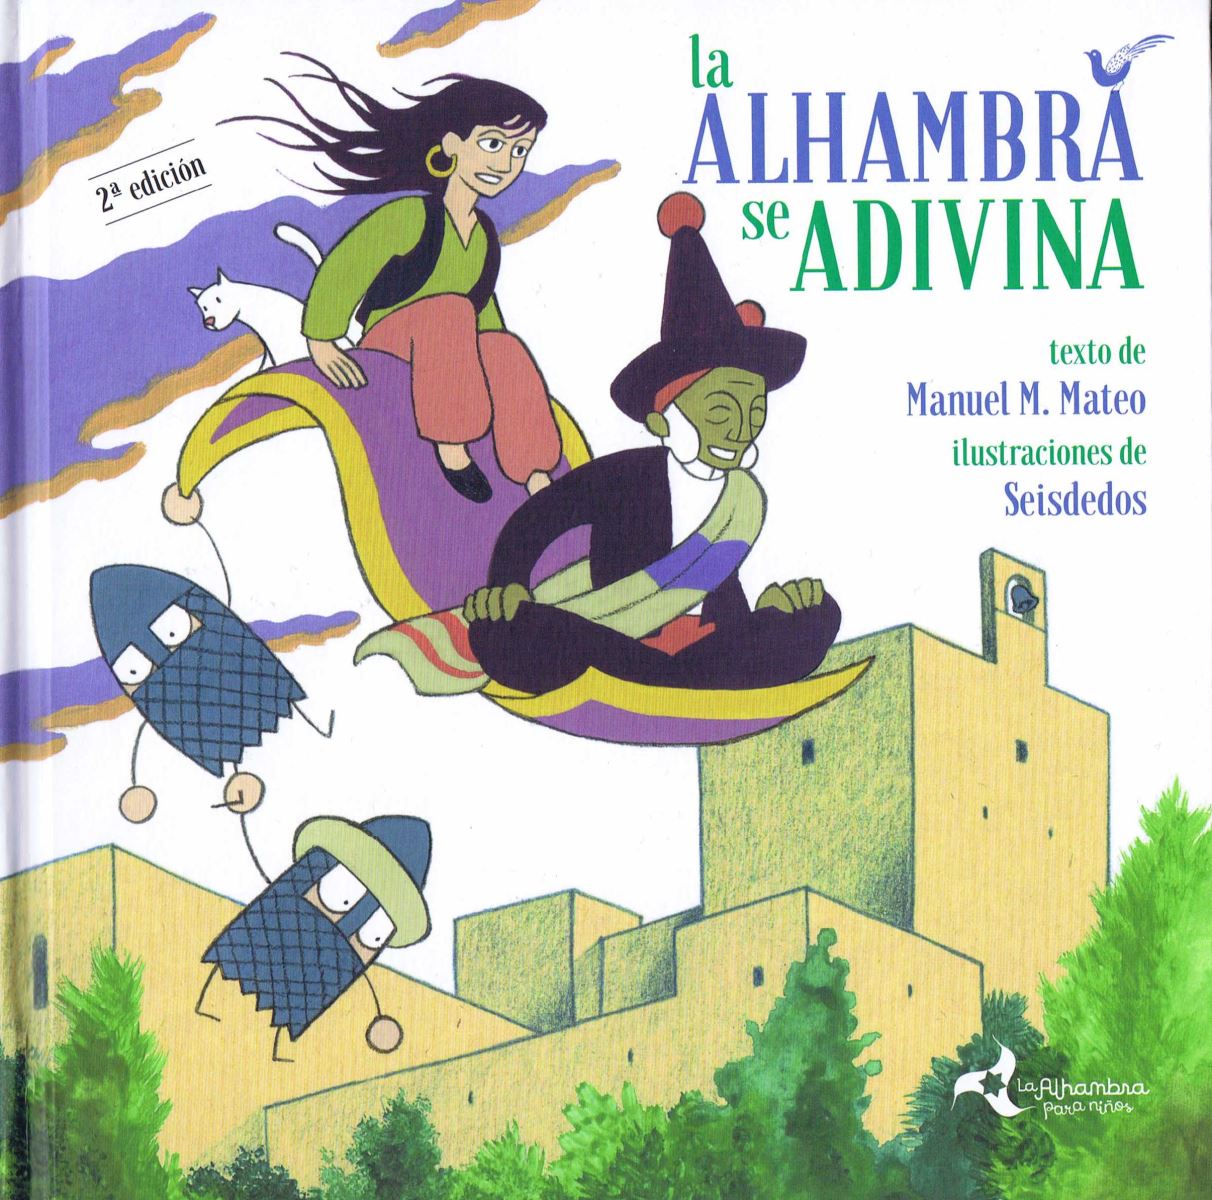 La Alhambra se adivina. Nueva publicación sobre adivinanzas.